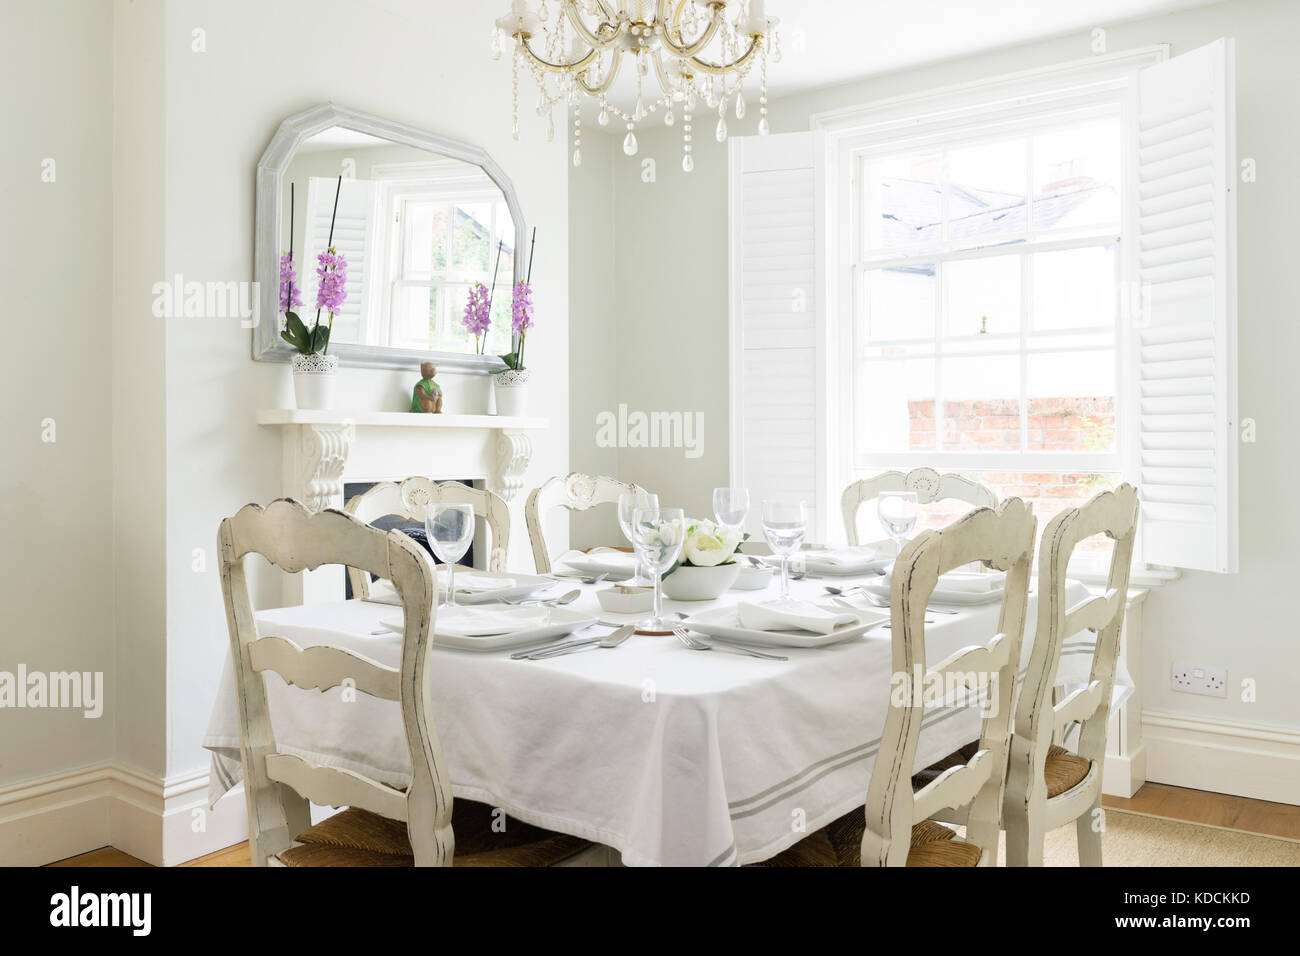 Ein helles, Vintage gestalteten Speisesaal in einem viktorianischen Haus, in dem ein gedeckter Tisch mit Stühlen, geschlossene Fenster, Kronleuchter und einen Kamin. Stockfoto